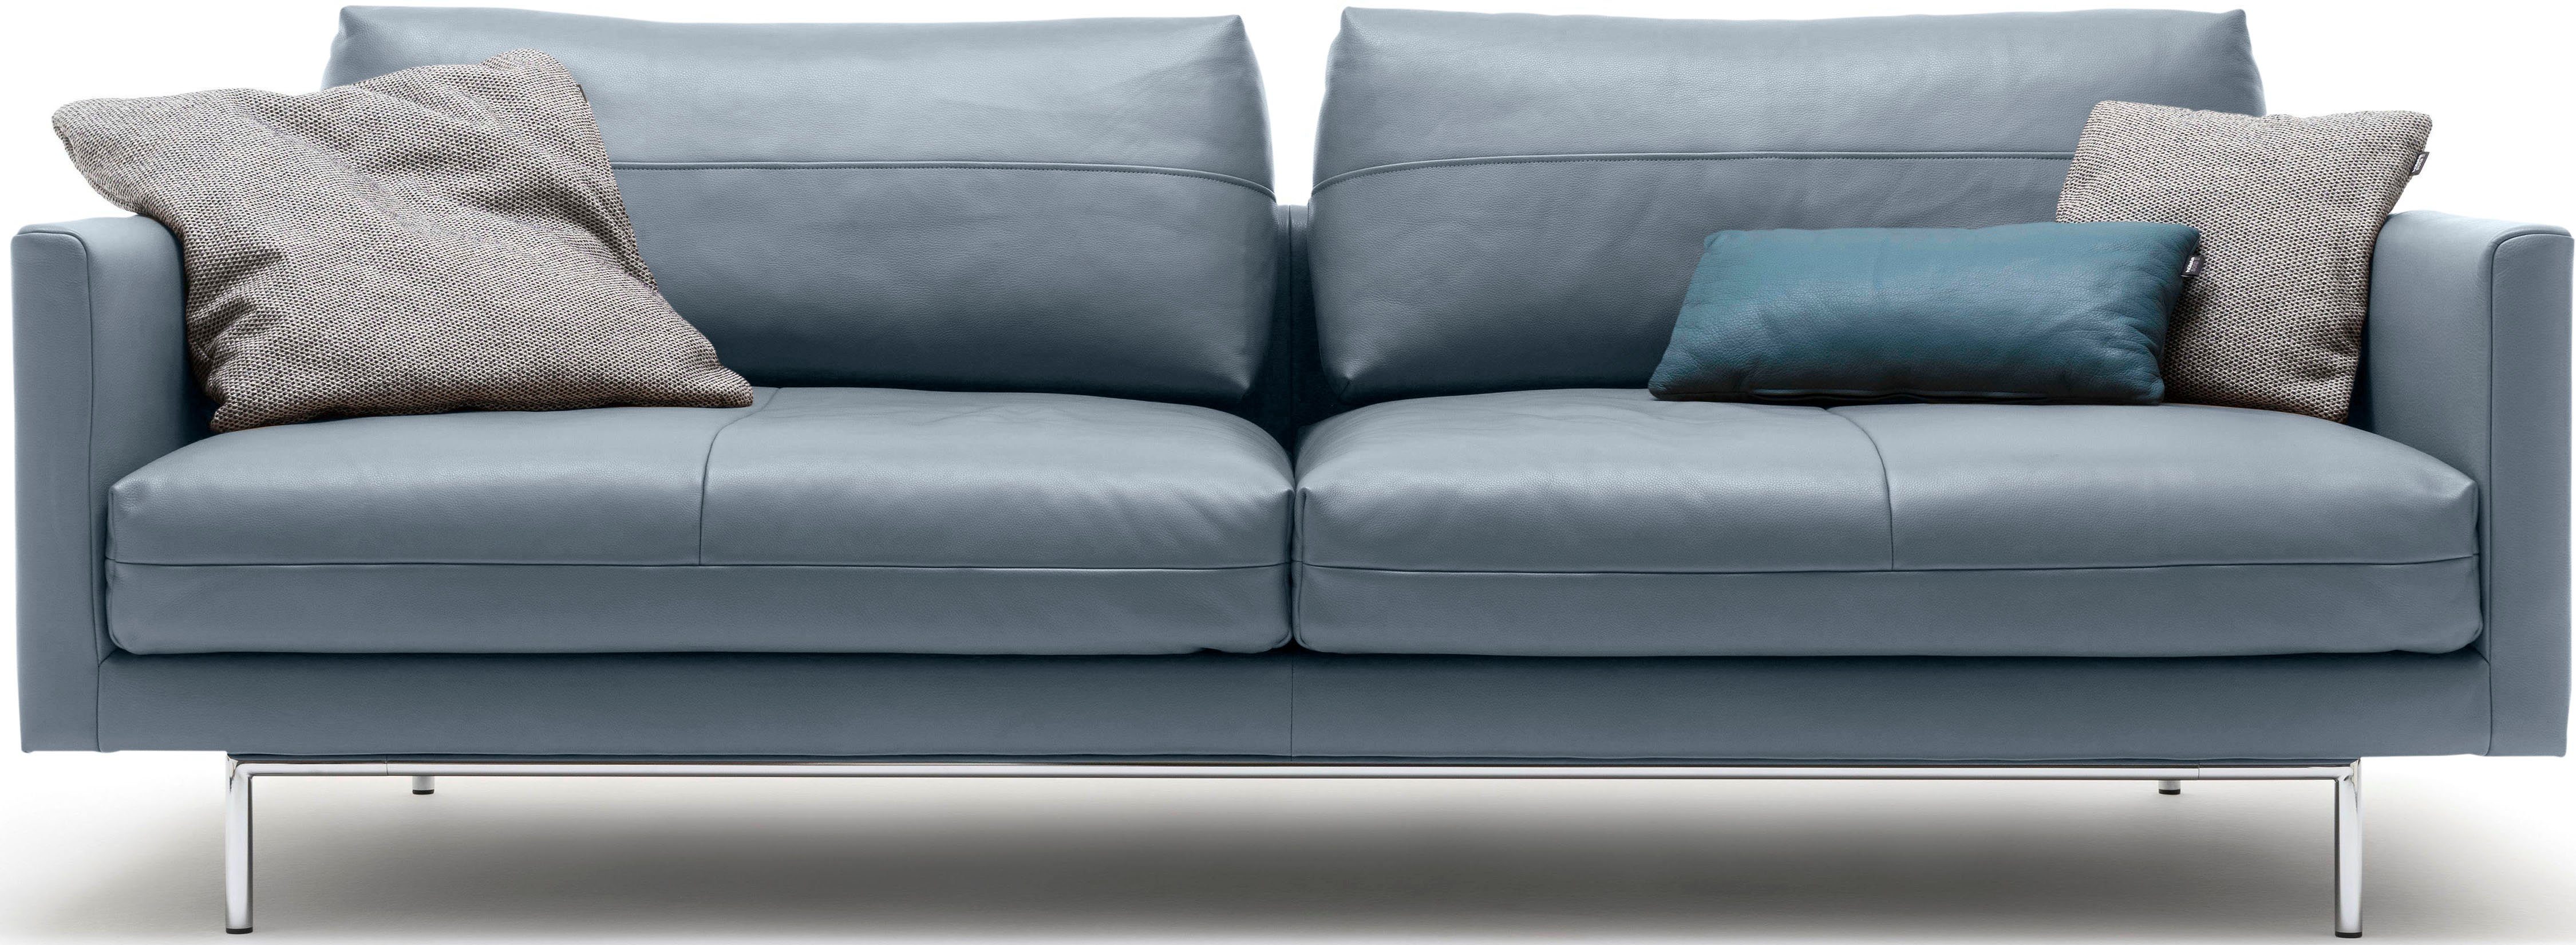 | 3-Sitzer blaugrau sofa hülsta blaugrau